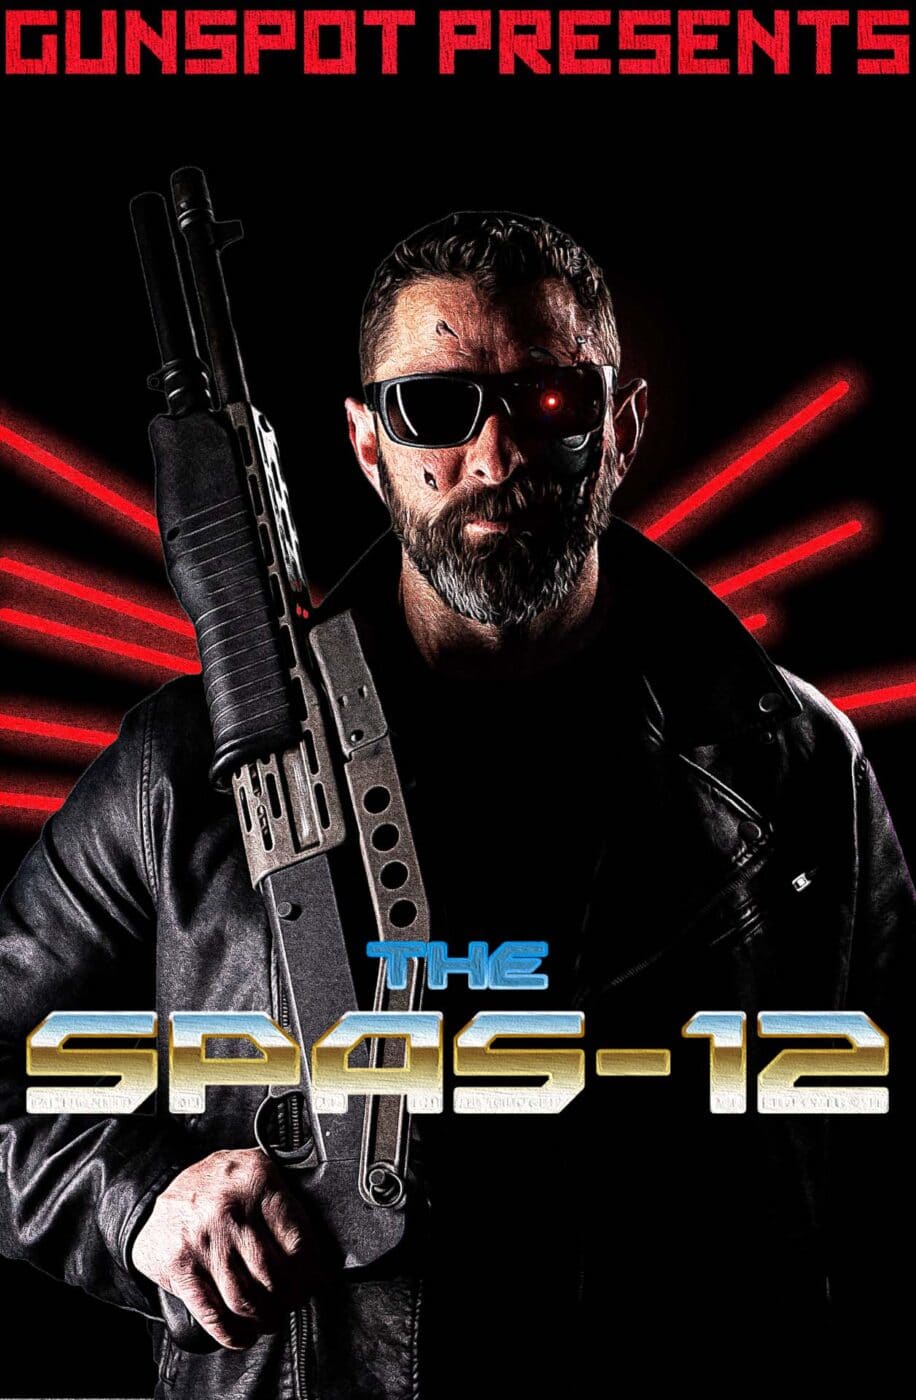 SPAS-12 shotgun poster